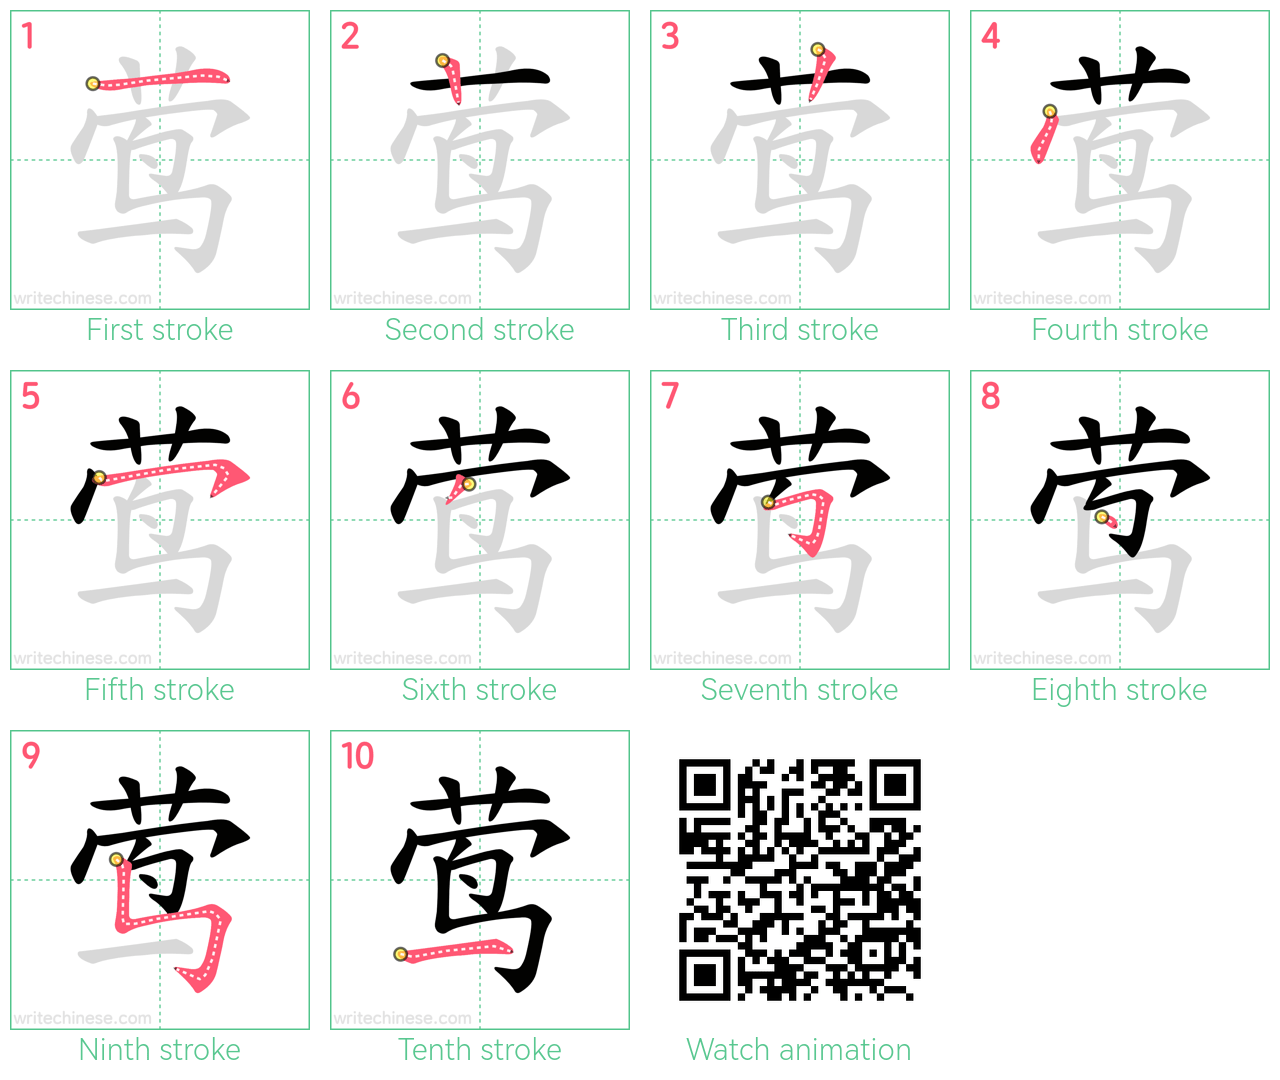 莺 step-by-step stroke order diagrams